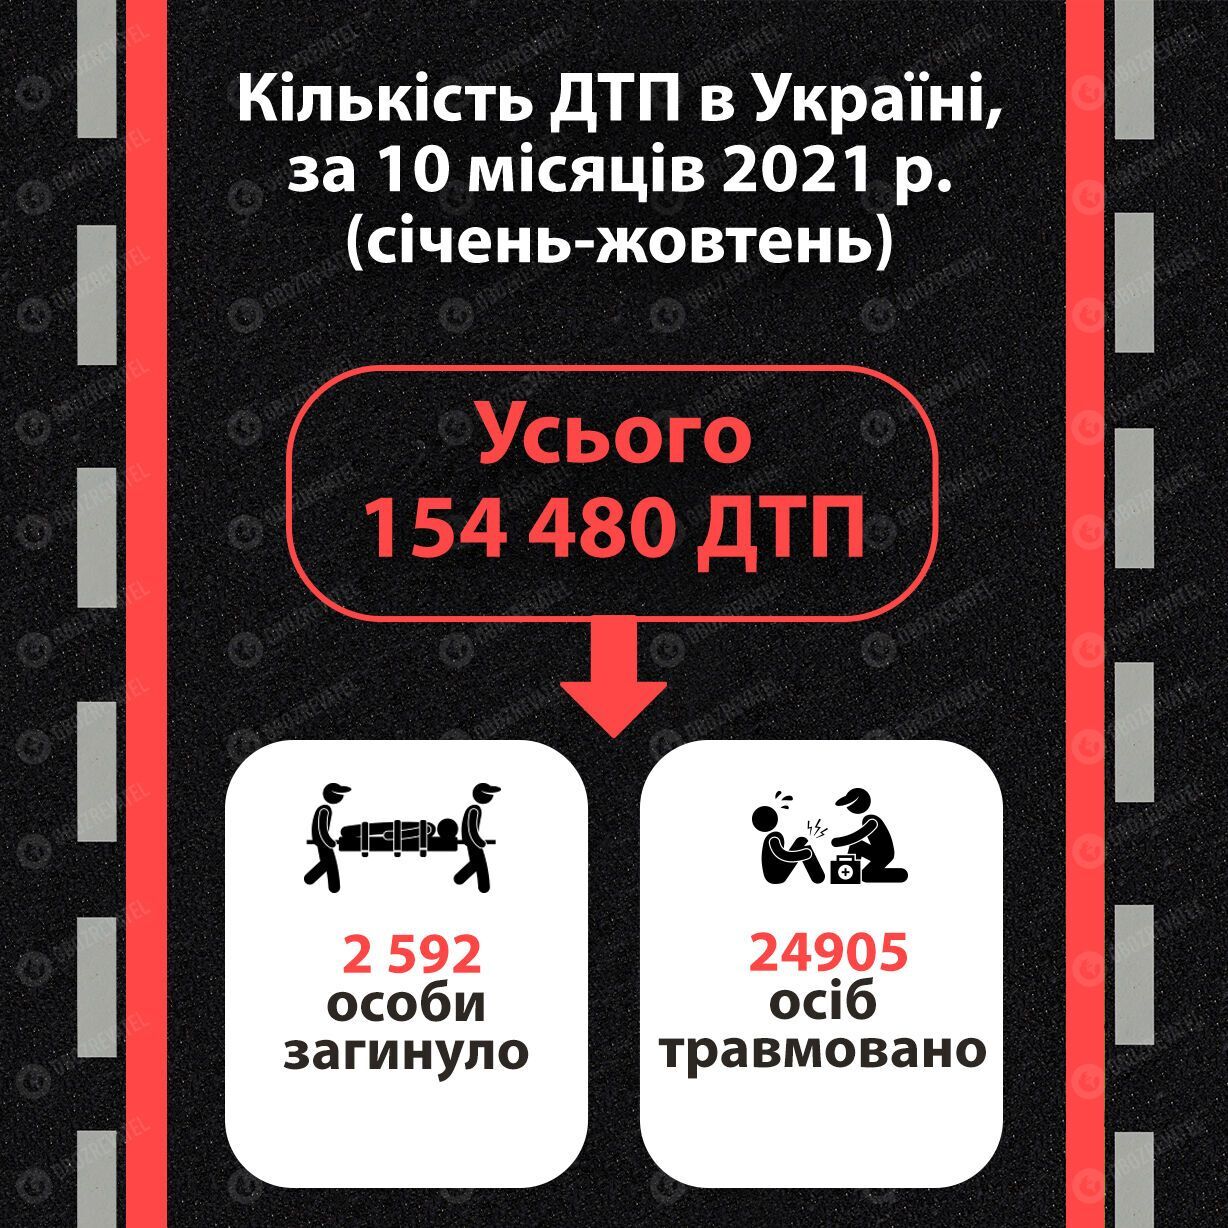 Статистика щодо ДТП в Україні